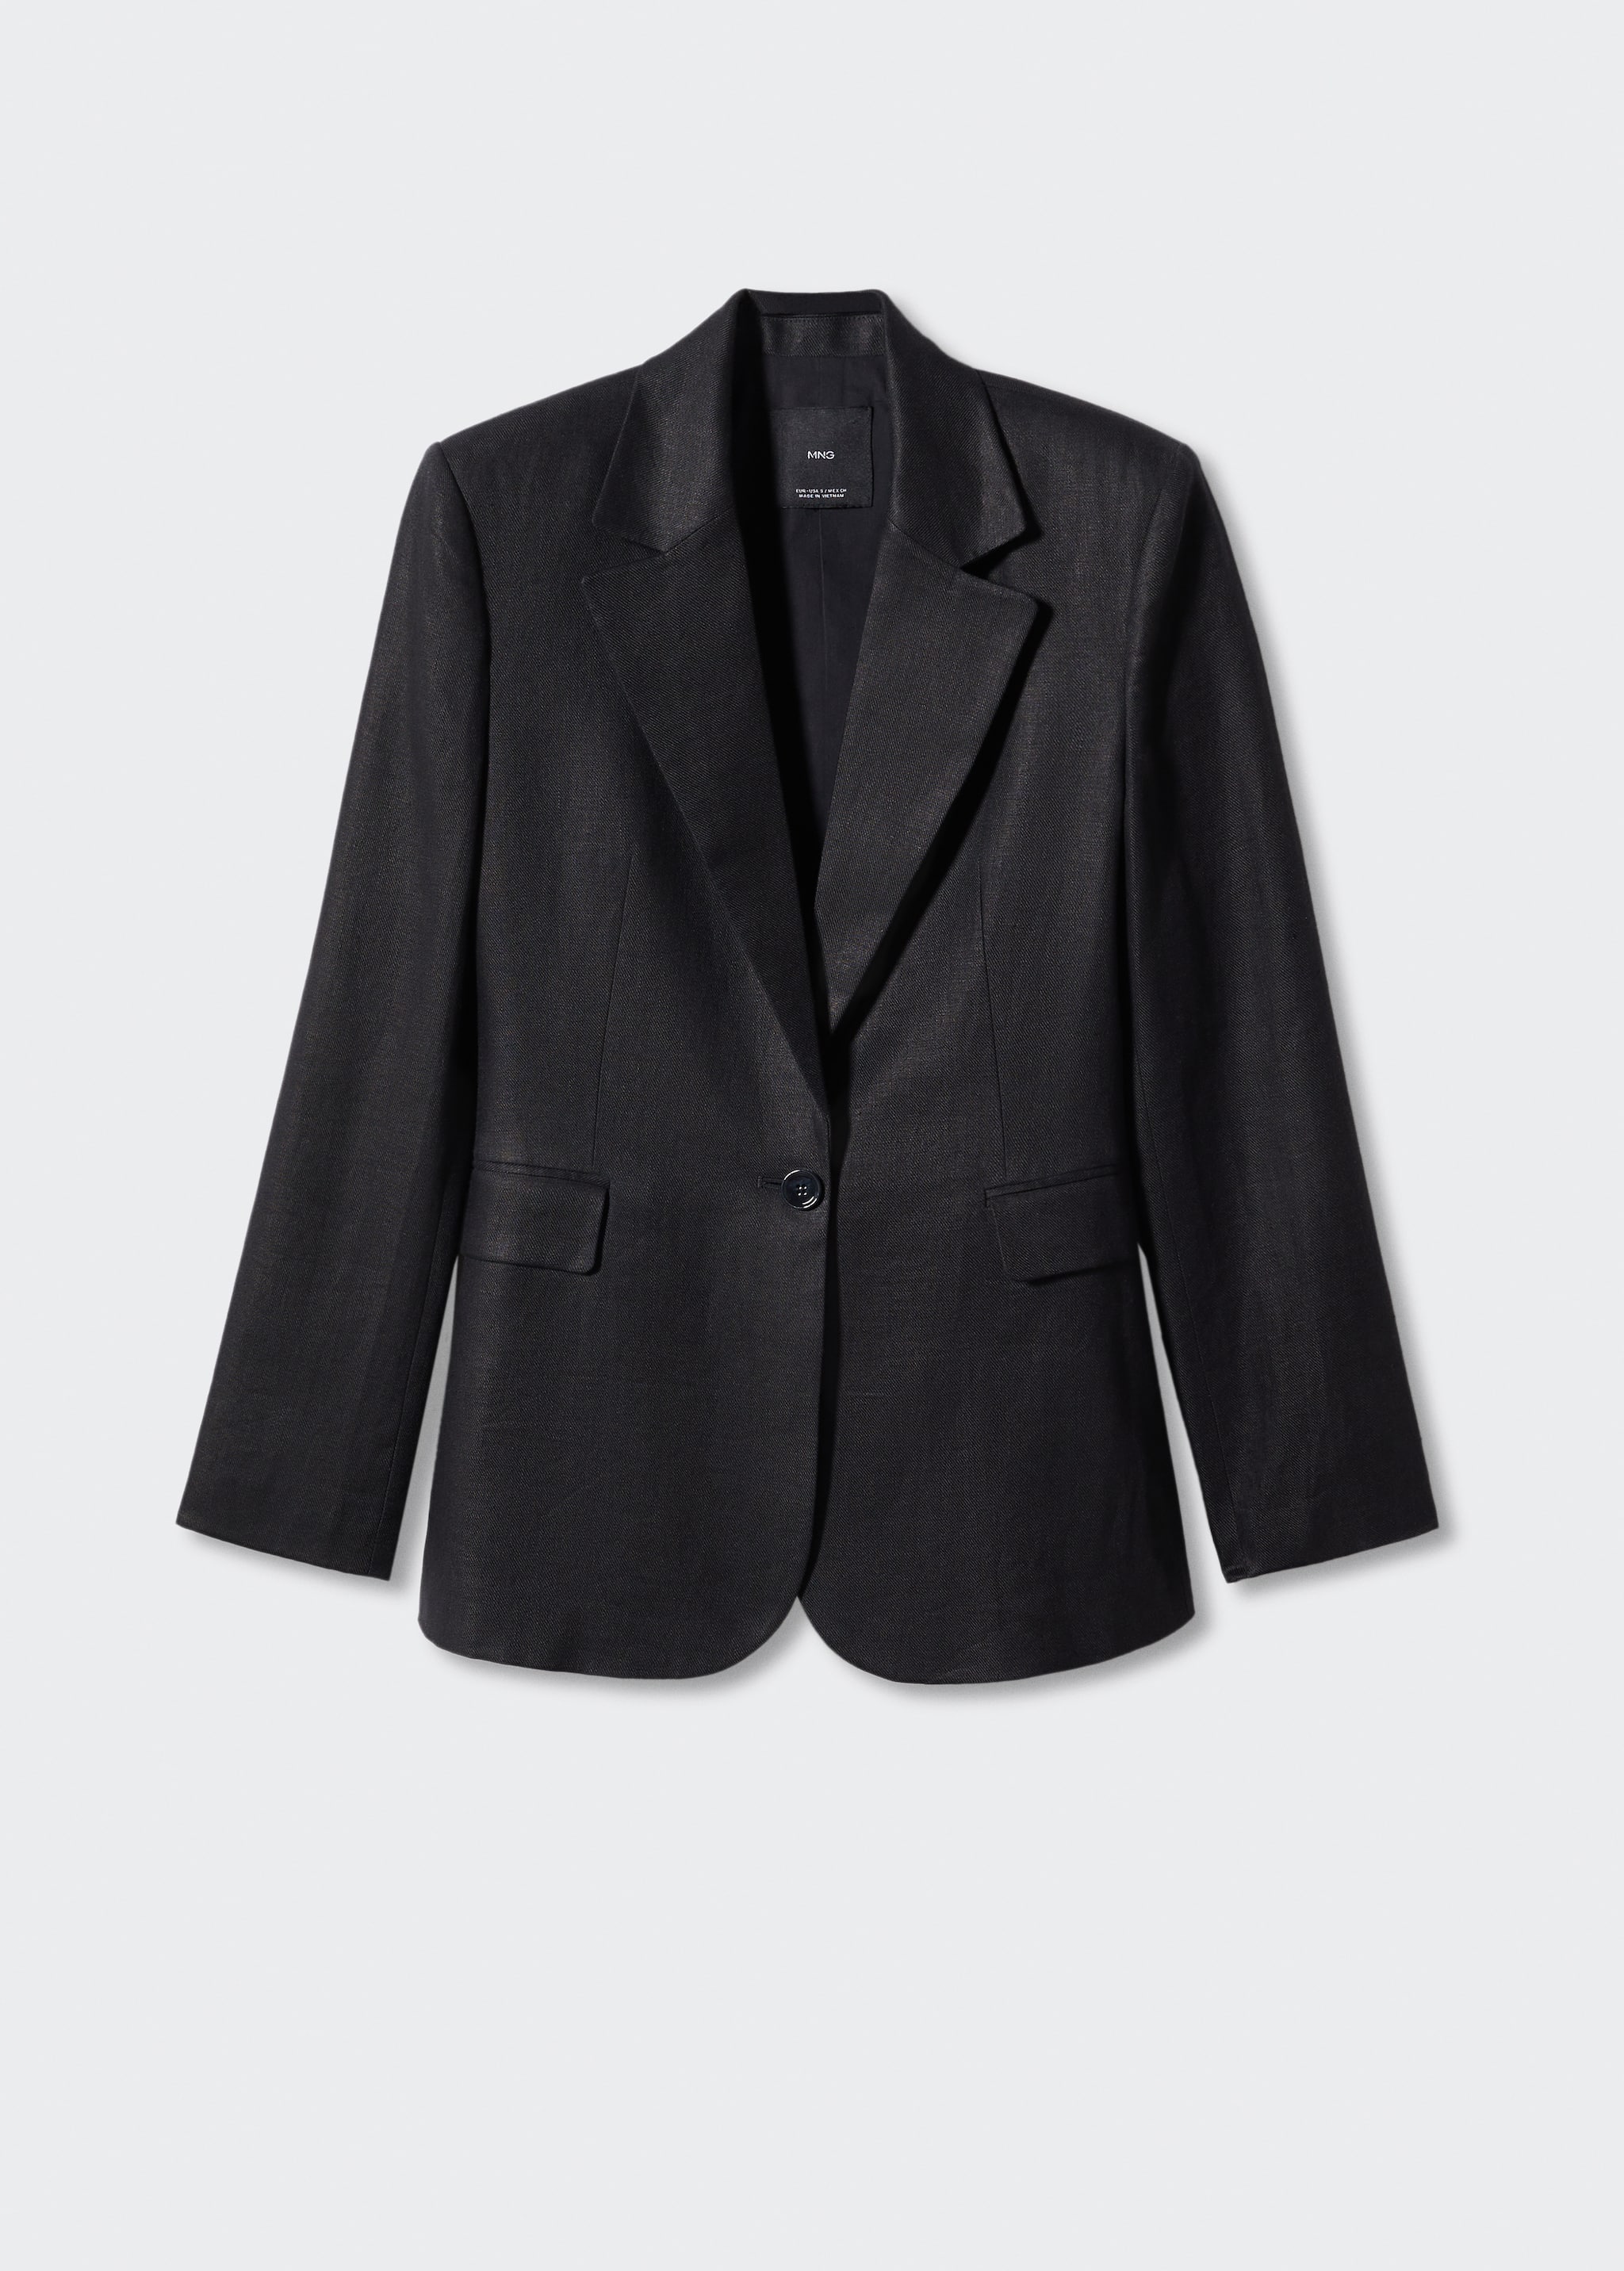 Blazer suit 100% linen - Article without model